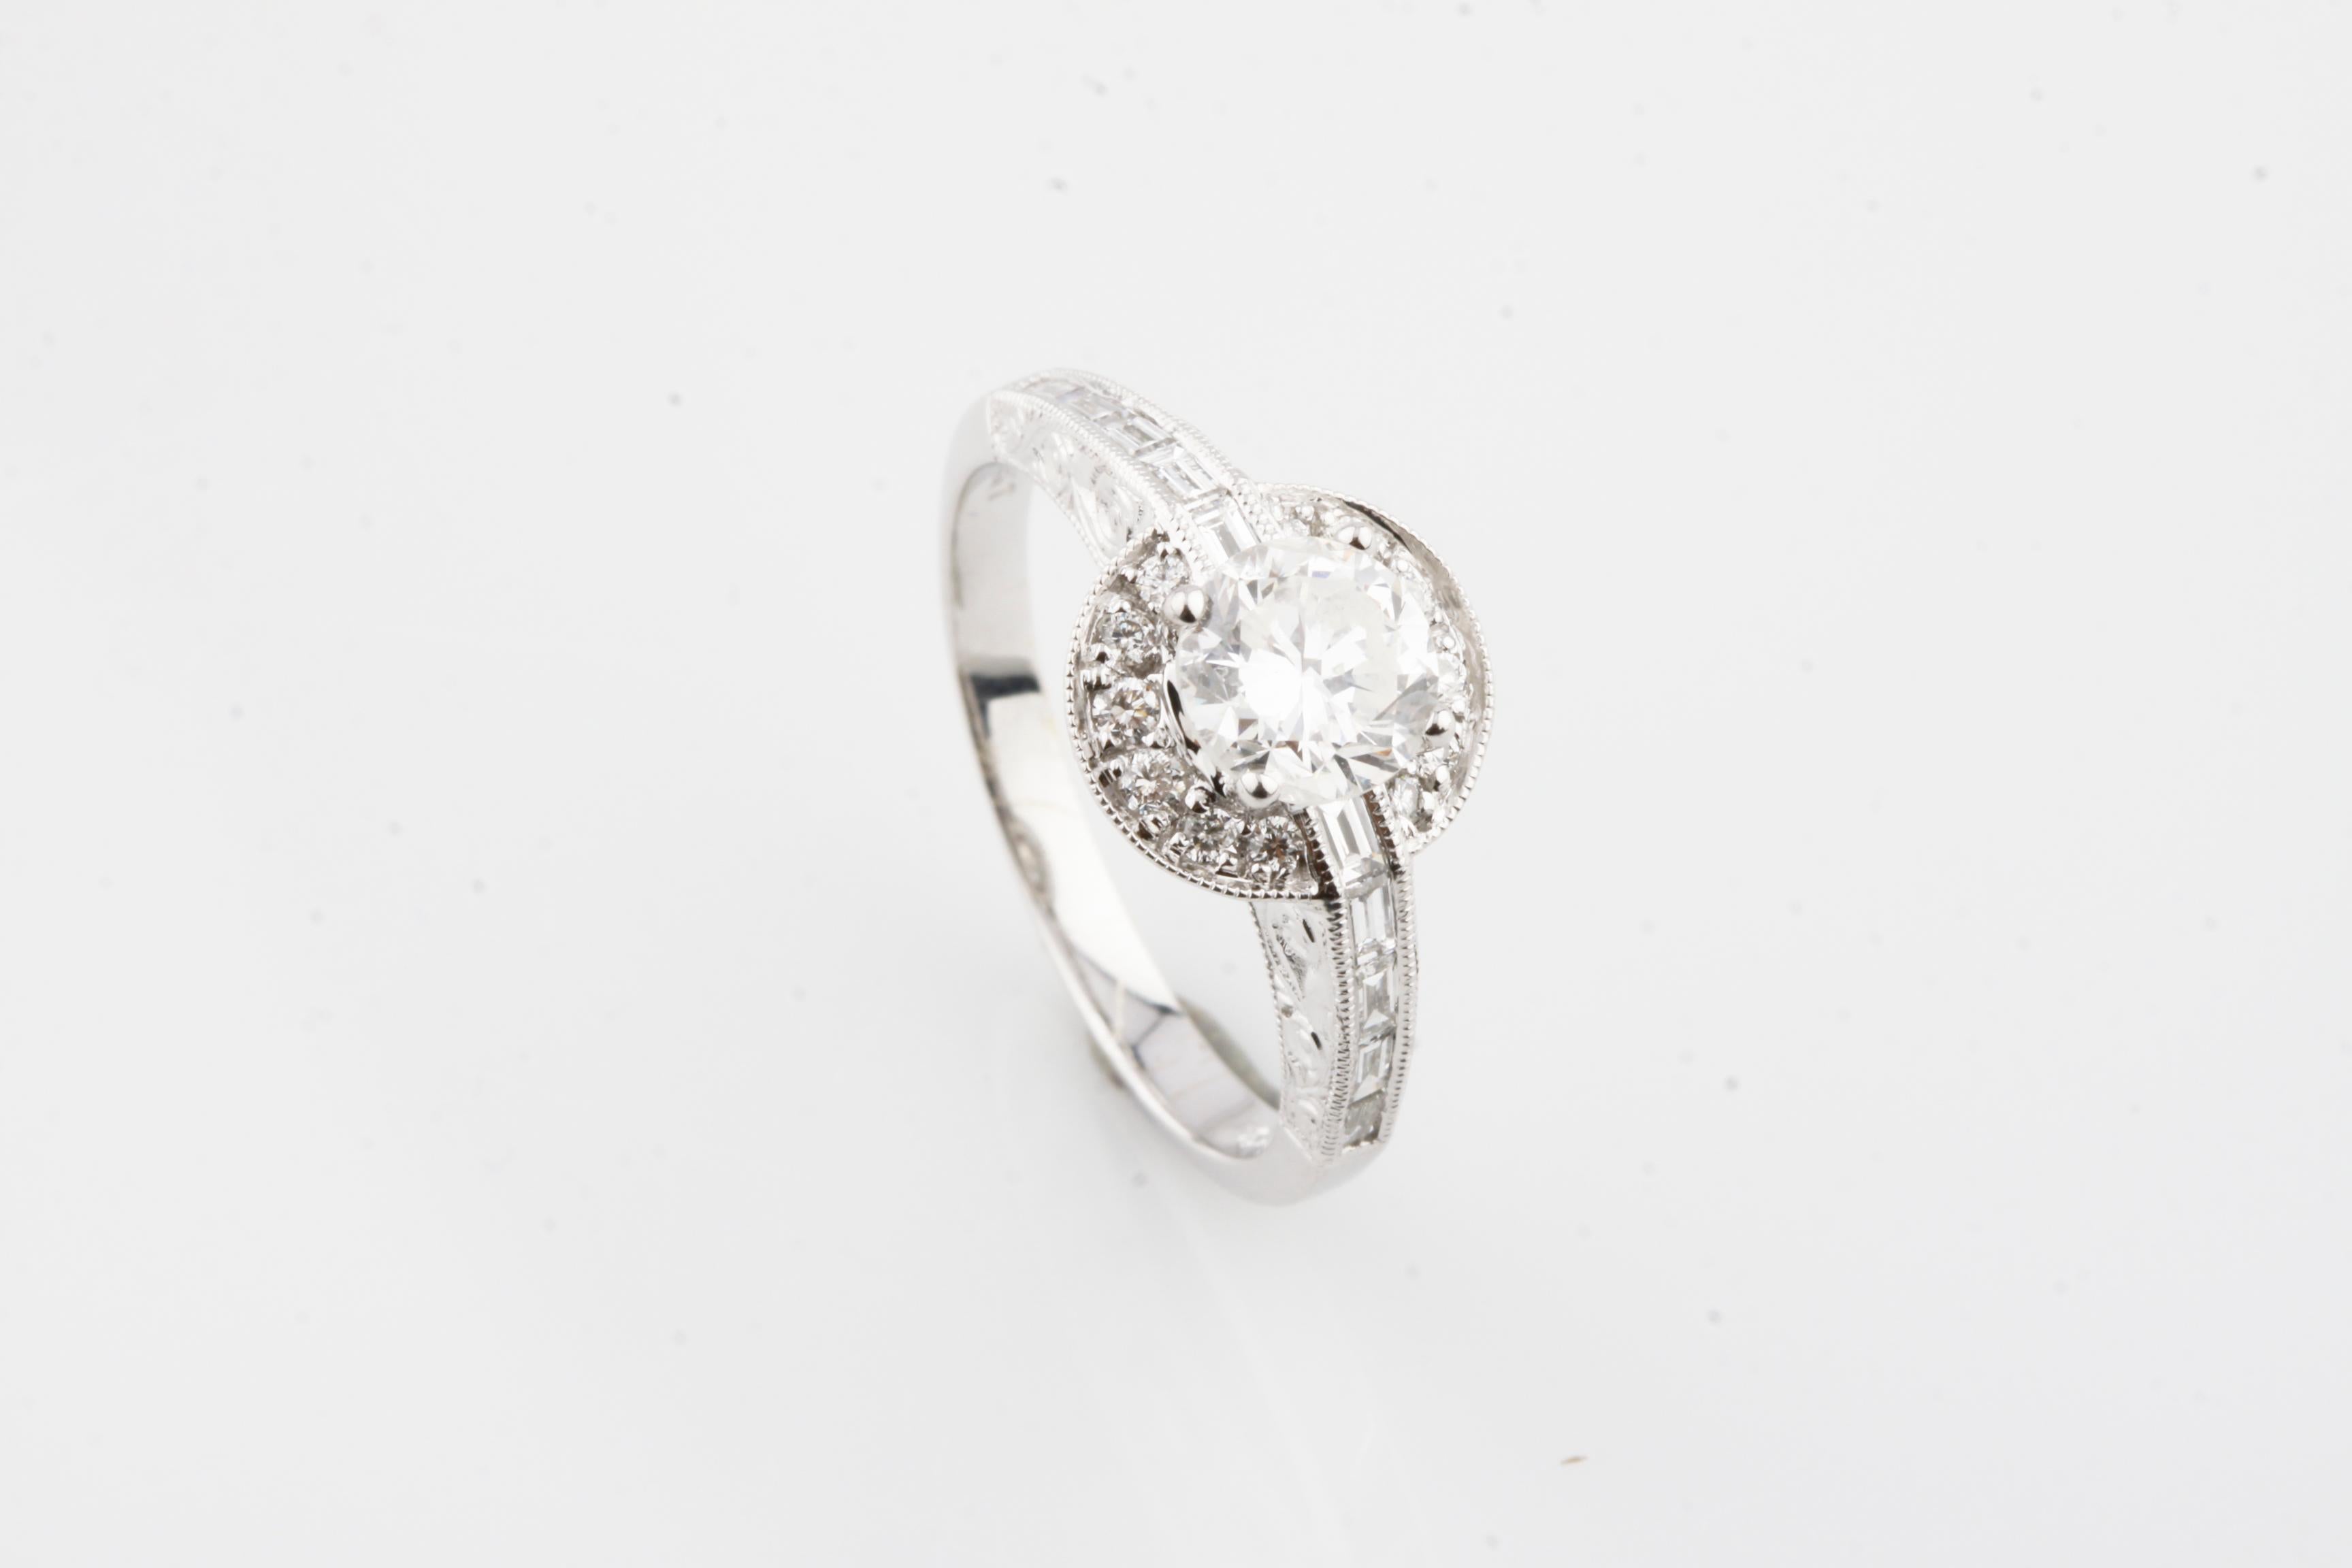 Eine elektronisch getestete 18k Weißgold Damen Cast Diamond Unity Ring
Zustand ist sehr gut
Mit einem diamantbesetzten Solitär in einer diamantbesetzten Lünette, unterstützt von diamantbesetzten Schultern
Ergänzt durch ein zwei Millimeter breites